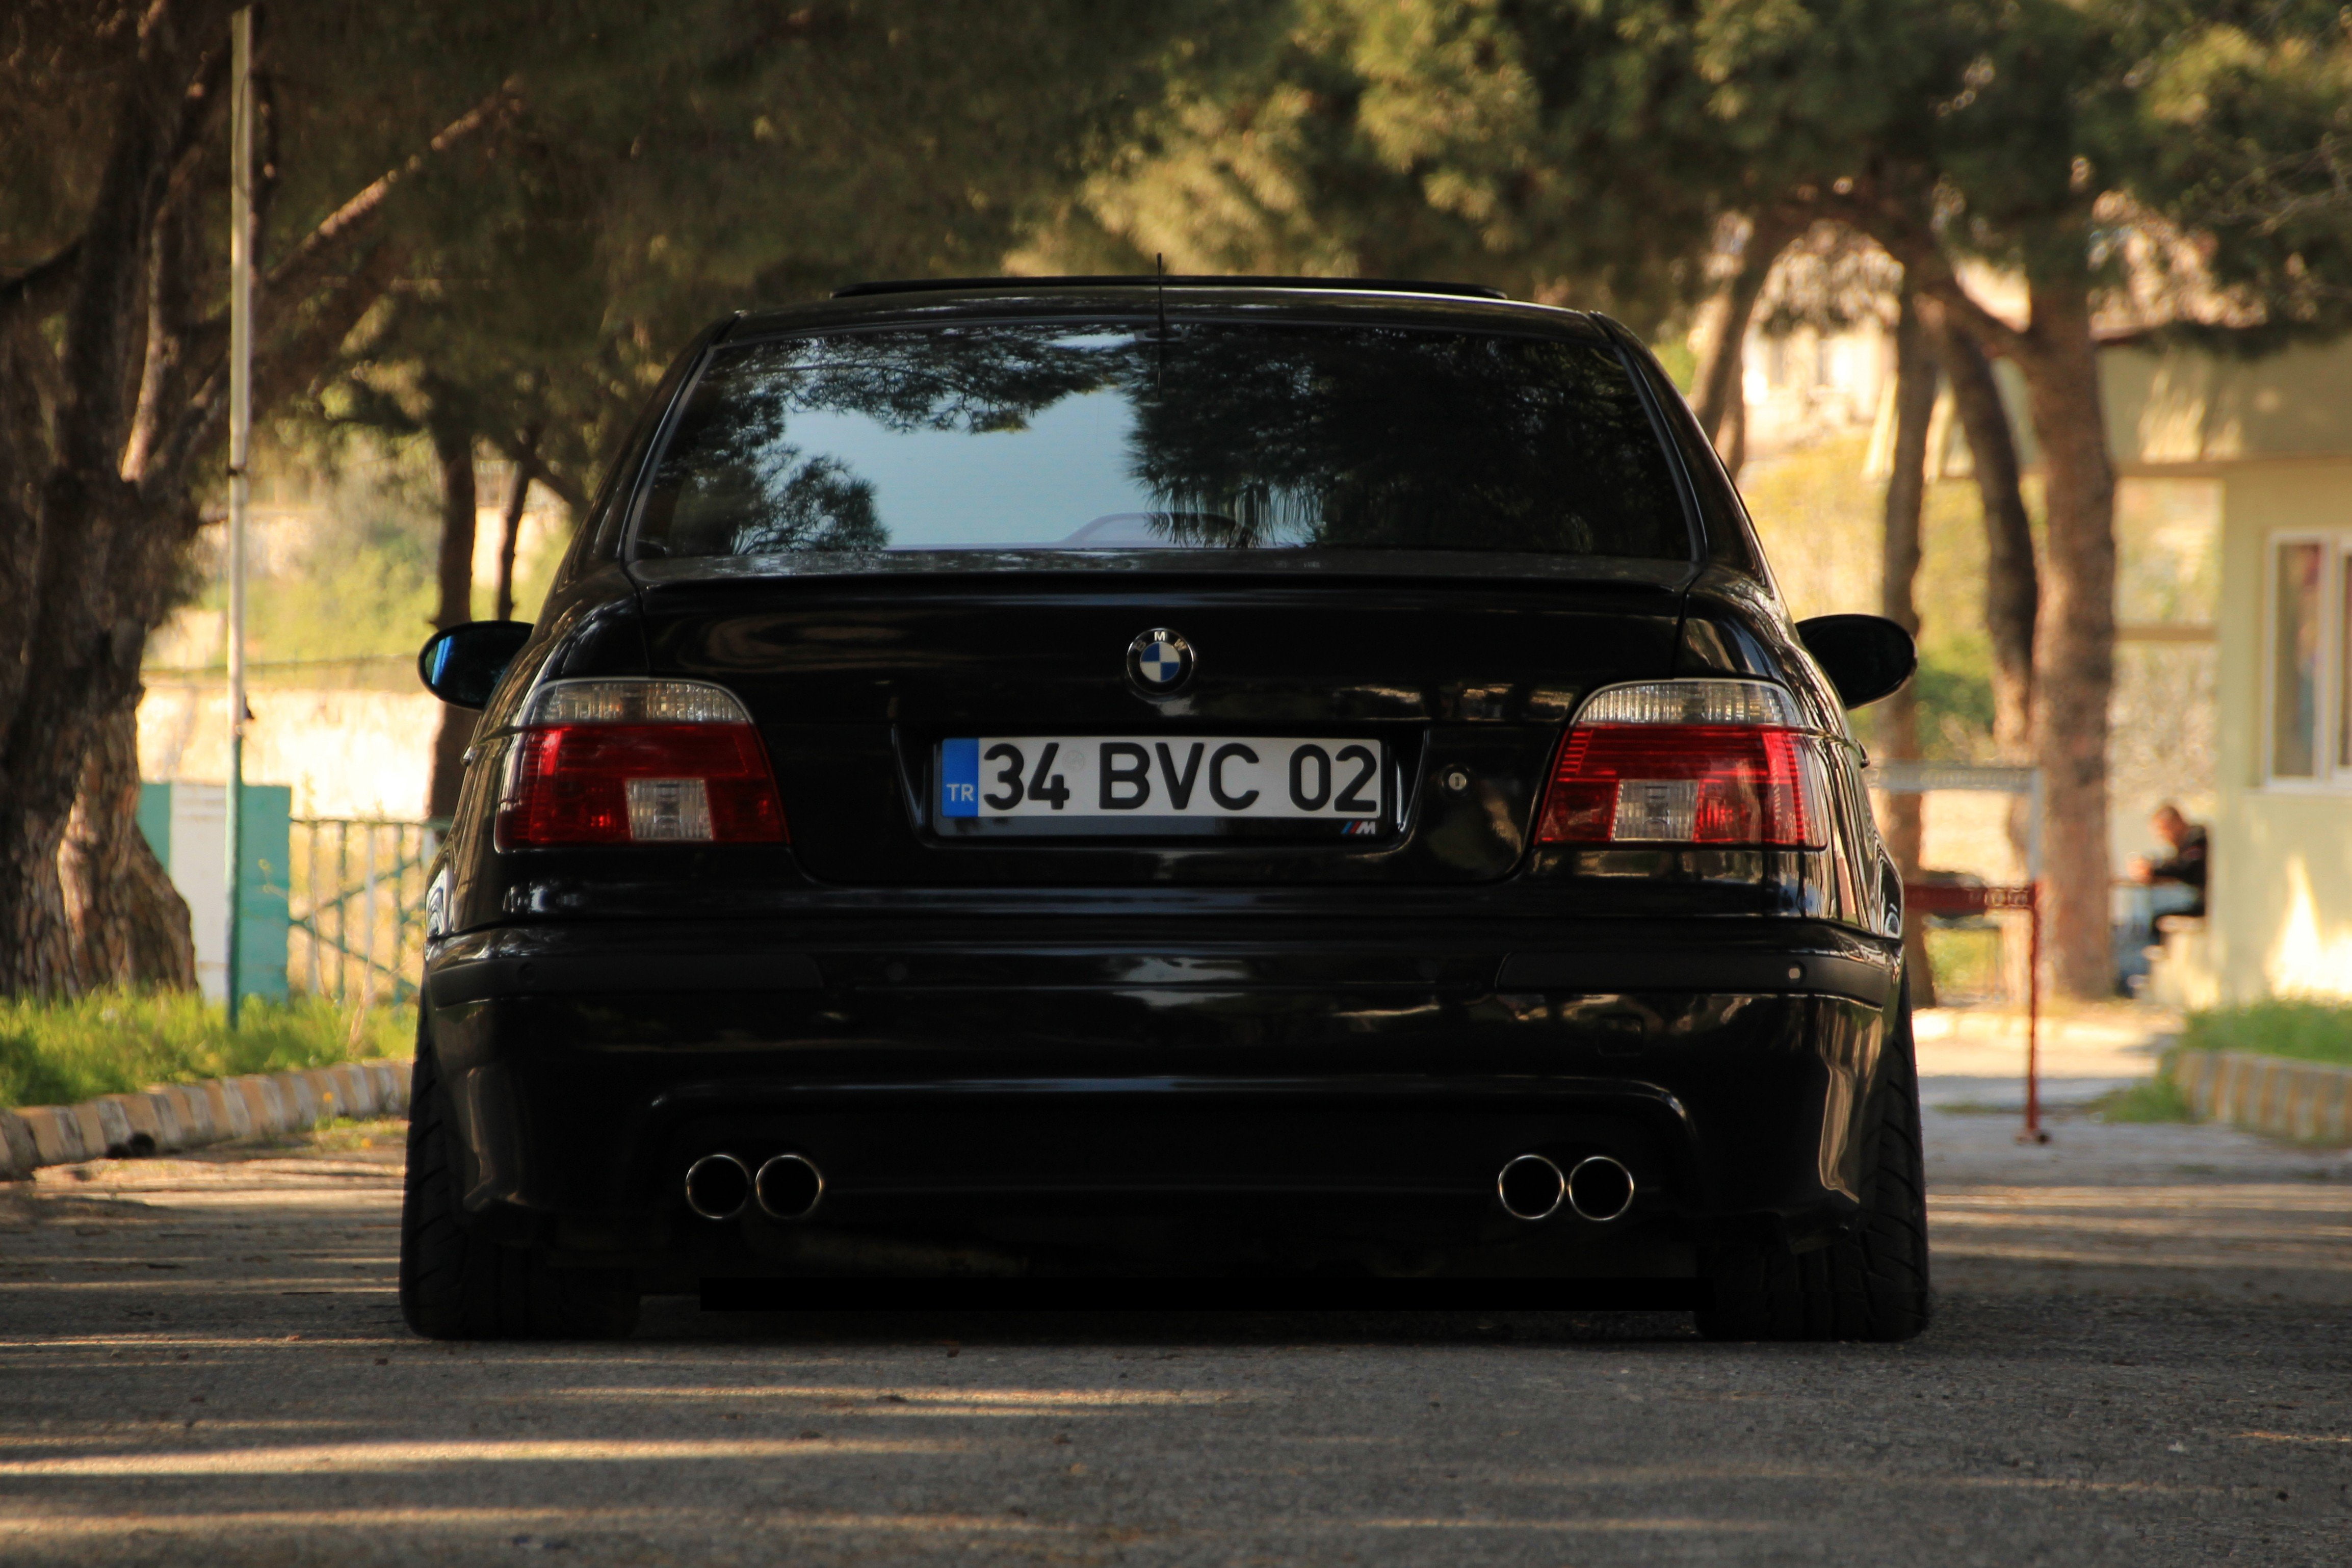 bmw, BMW E39, BMW M5 E39, car